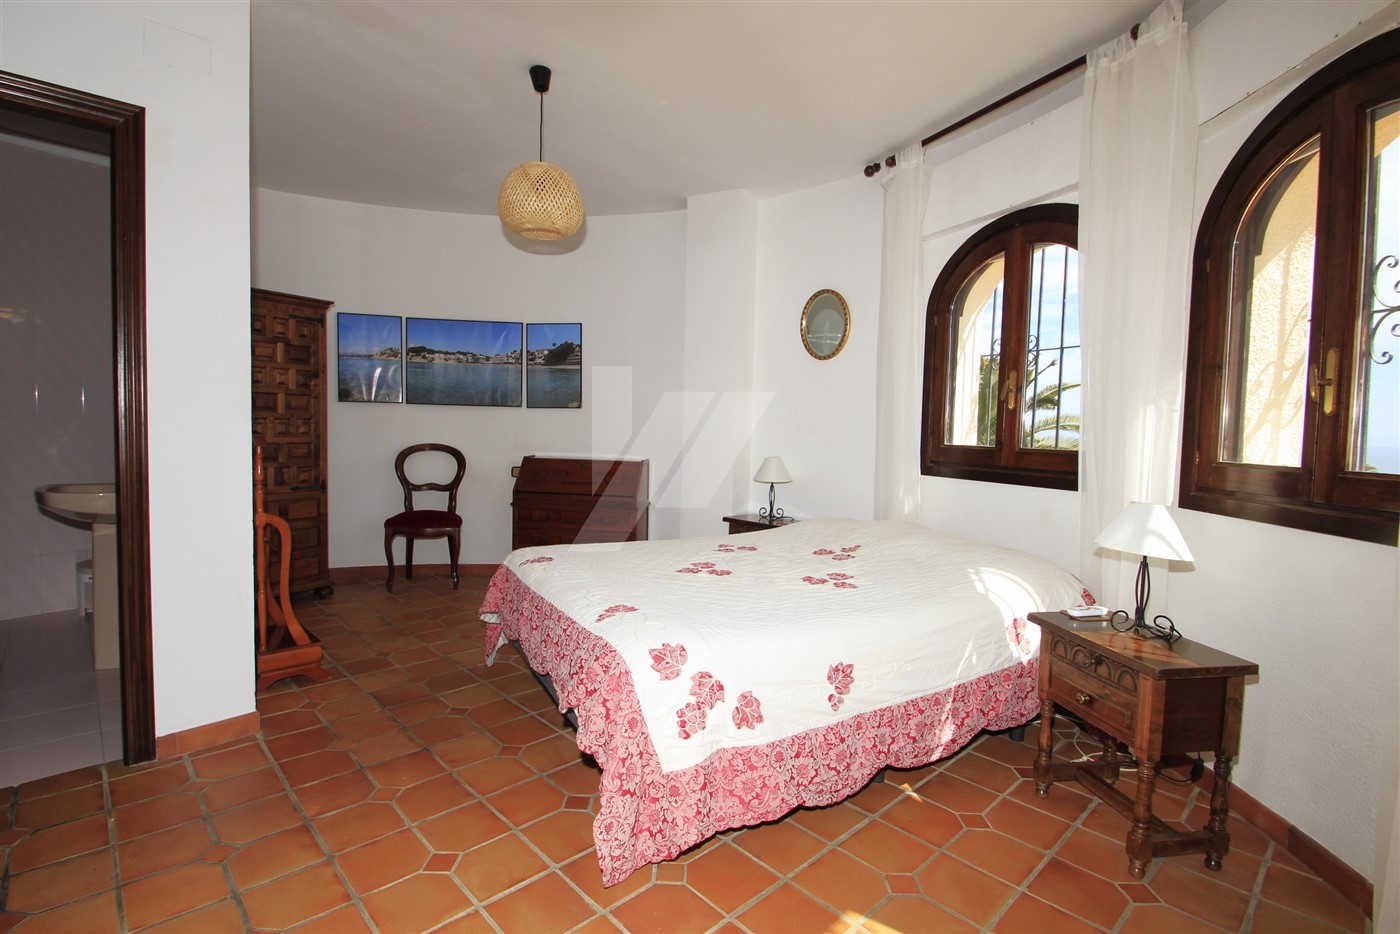 Exclusive villa with sea views in Benissa, Costa Blanca.